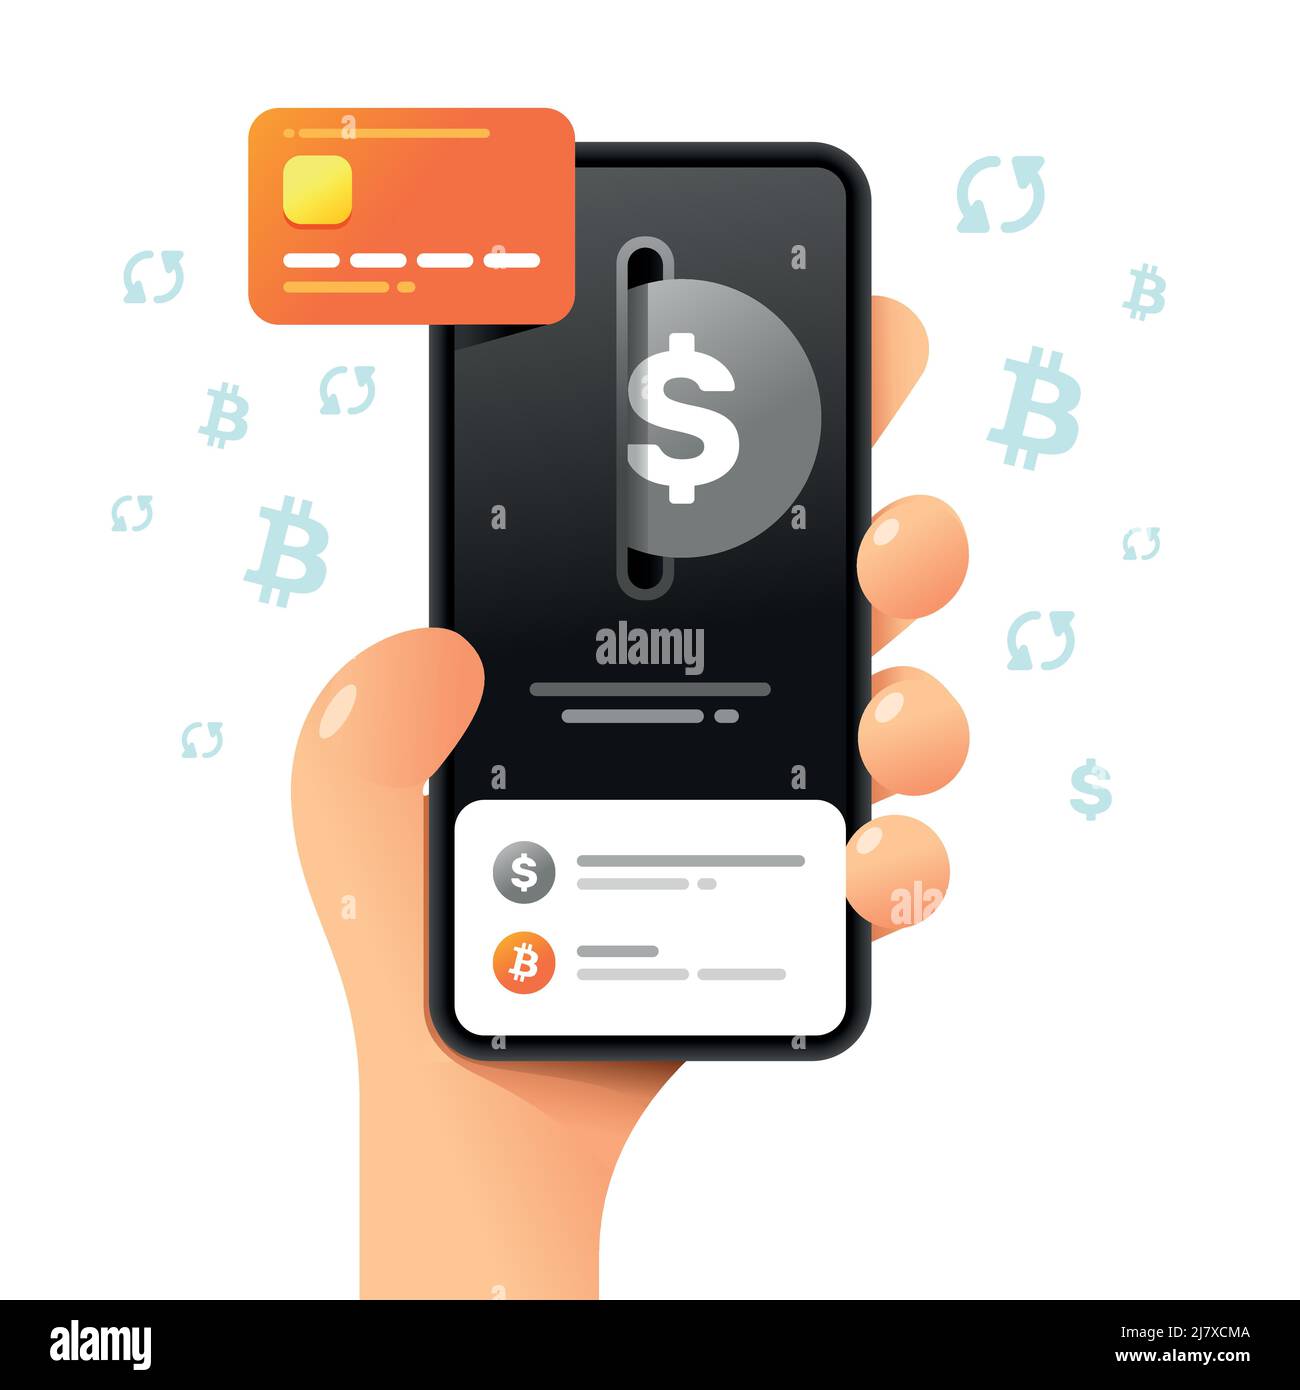 Une maquette de smartphone dans la main. Opération d'échange. Carte de crédit et dollar. Illustration de crypto-monnaie vectorielle colorée Illustration de Vecteur